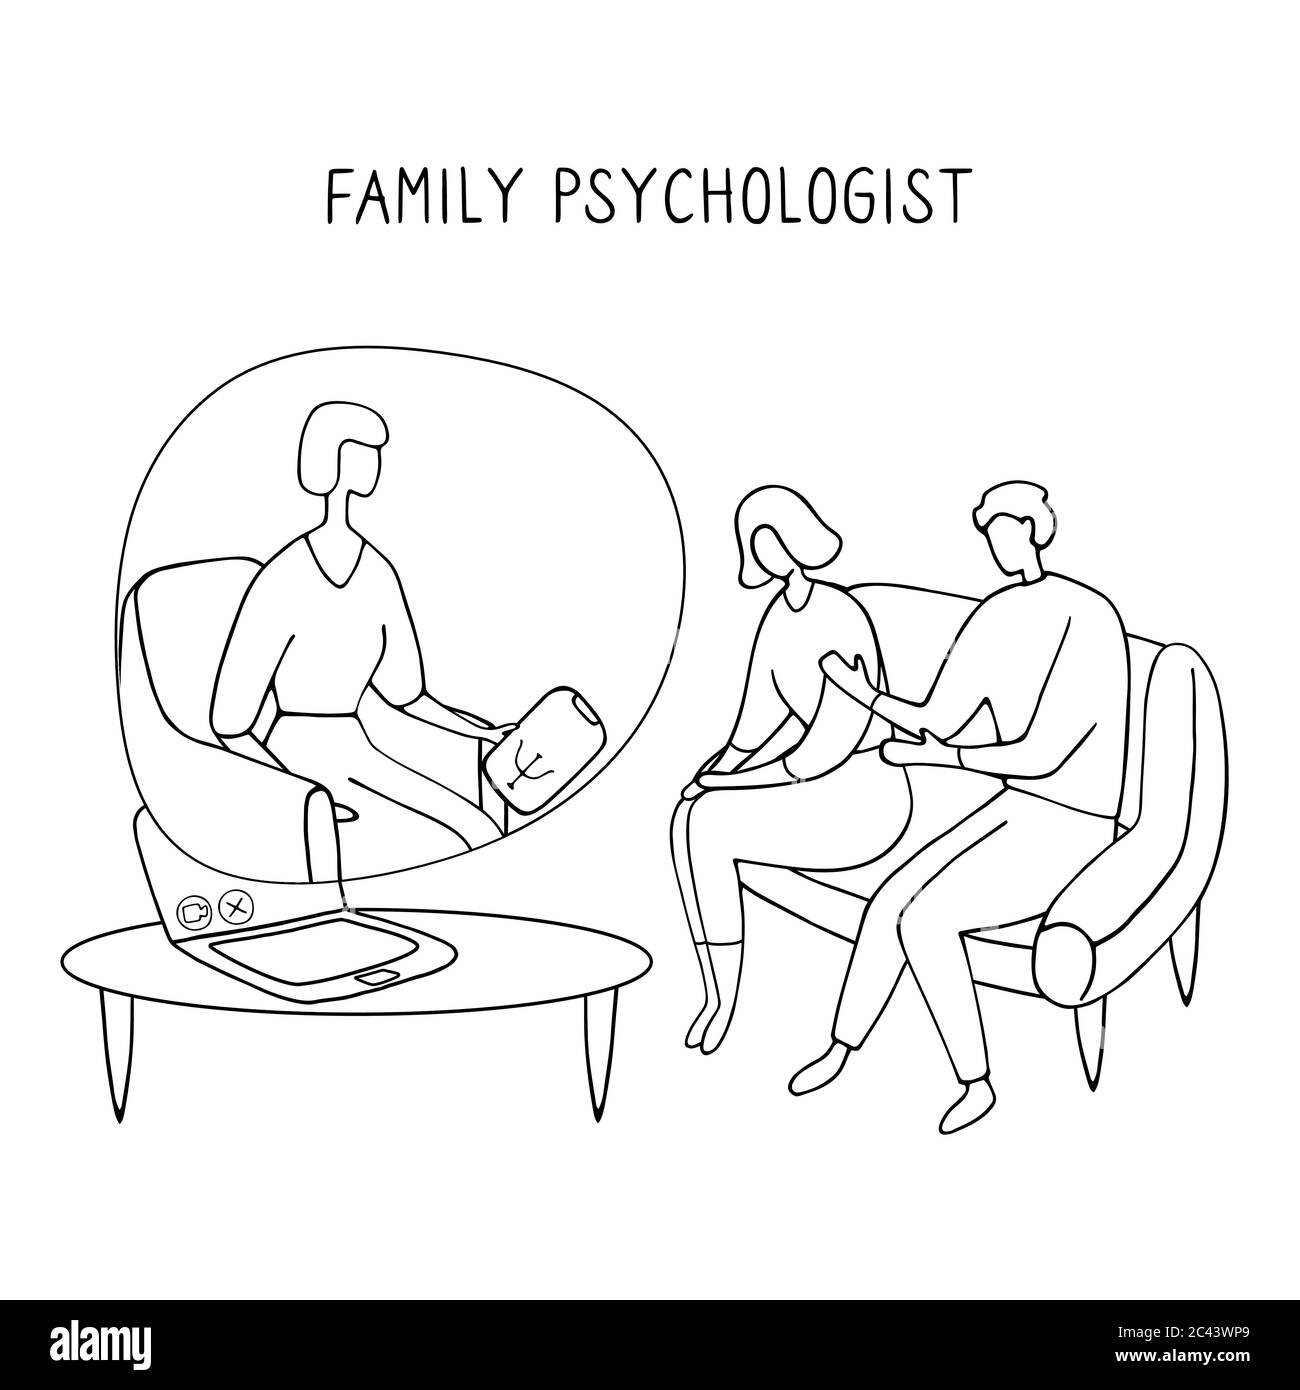 Familienpsychologe. Online-Beratung für Paare. Patienten bei psychologischer Beratung. Lineare Doodle-Illustration. Stock Vektor